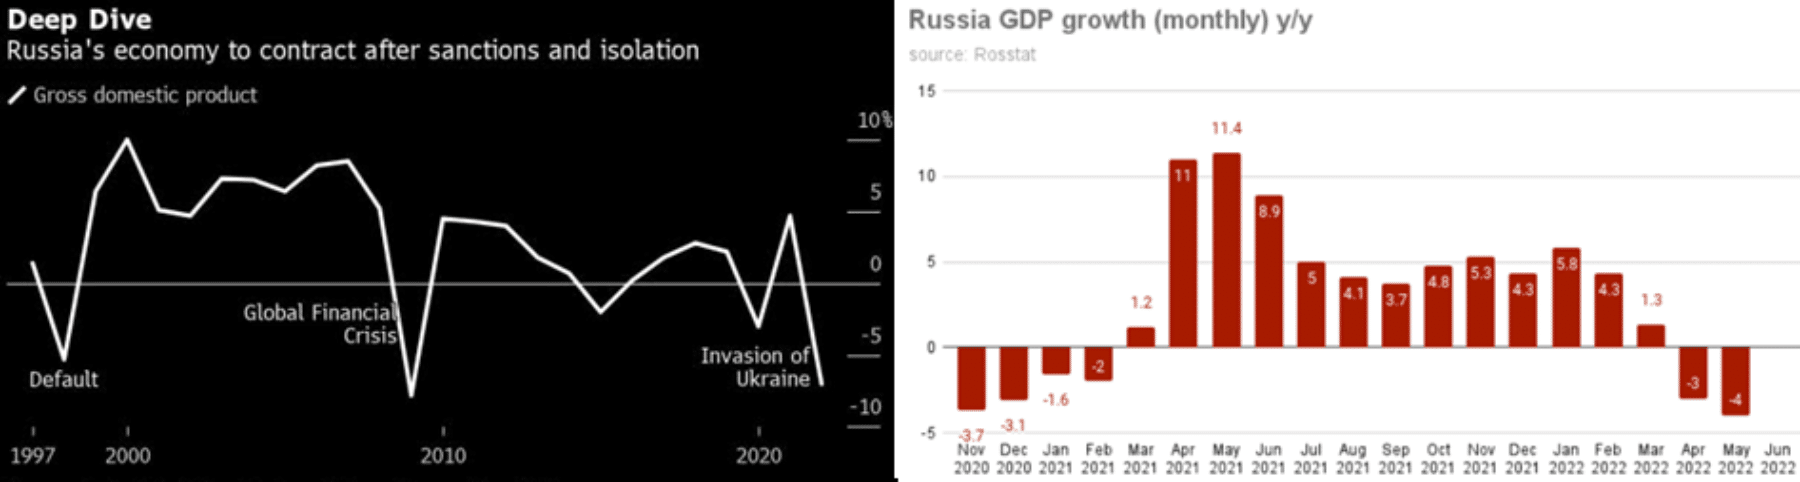 Russia's failure in subjugating Ukraine: A probable future